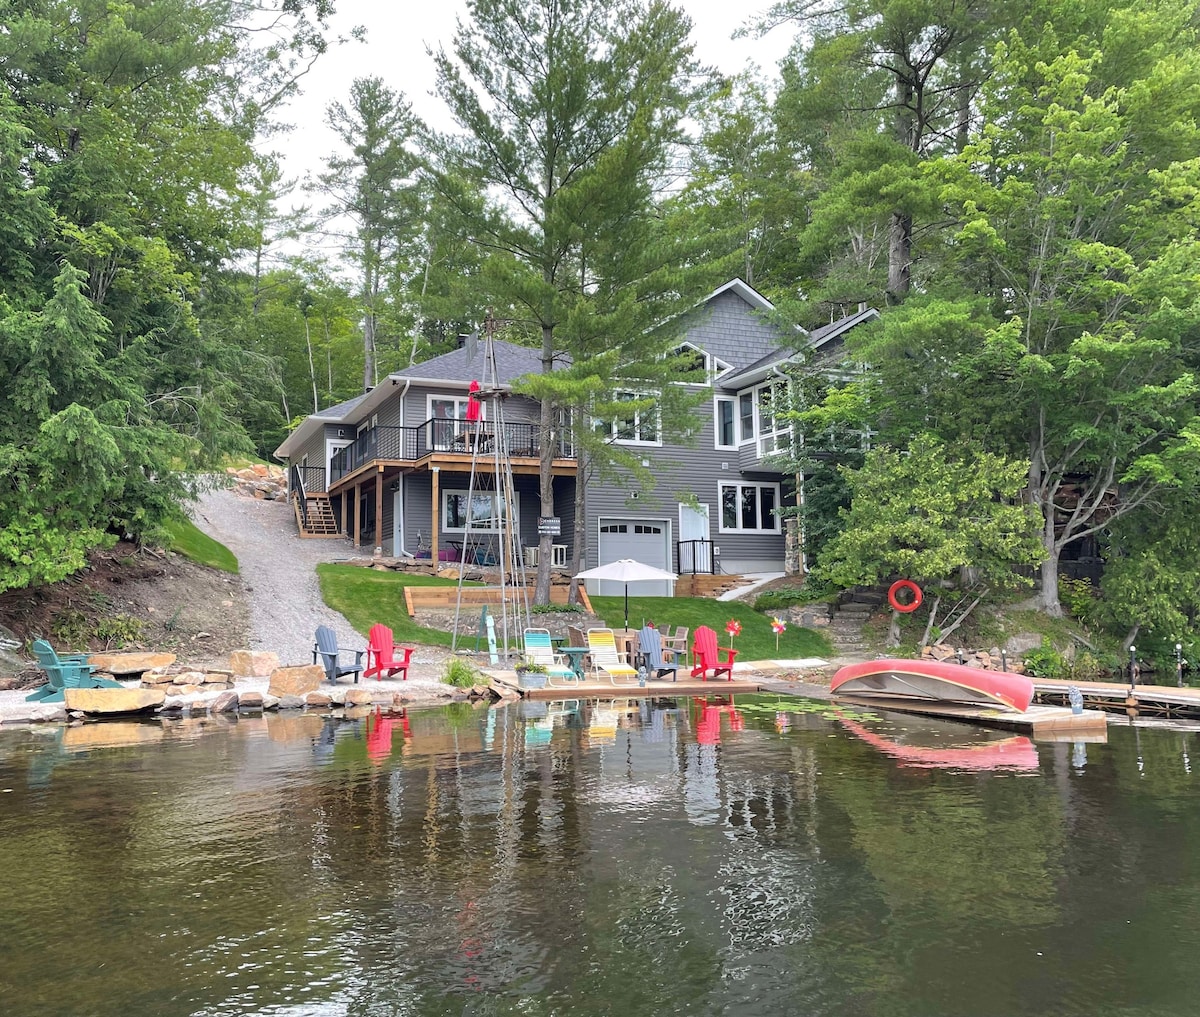 Room for 8! Riverfront - Canoe, Kayaks, BBQ